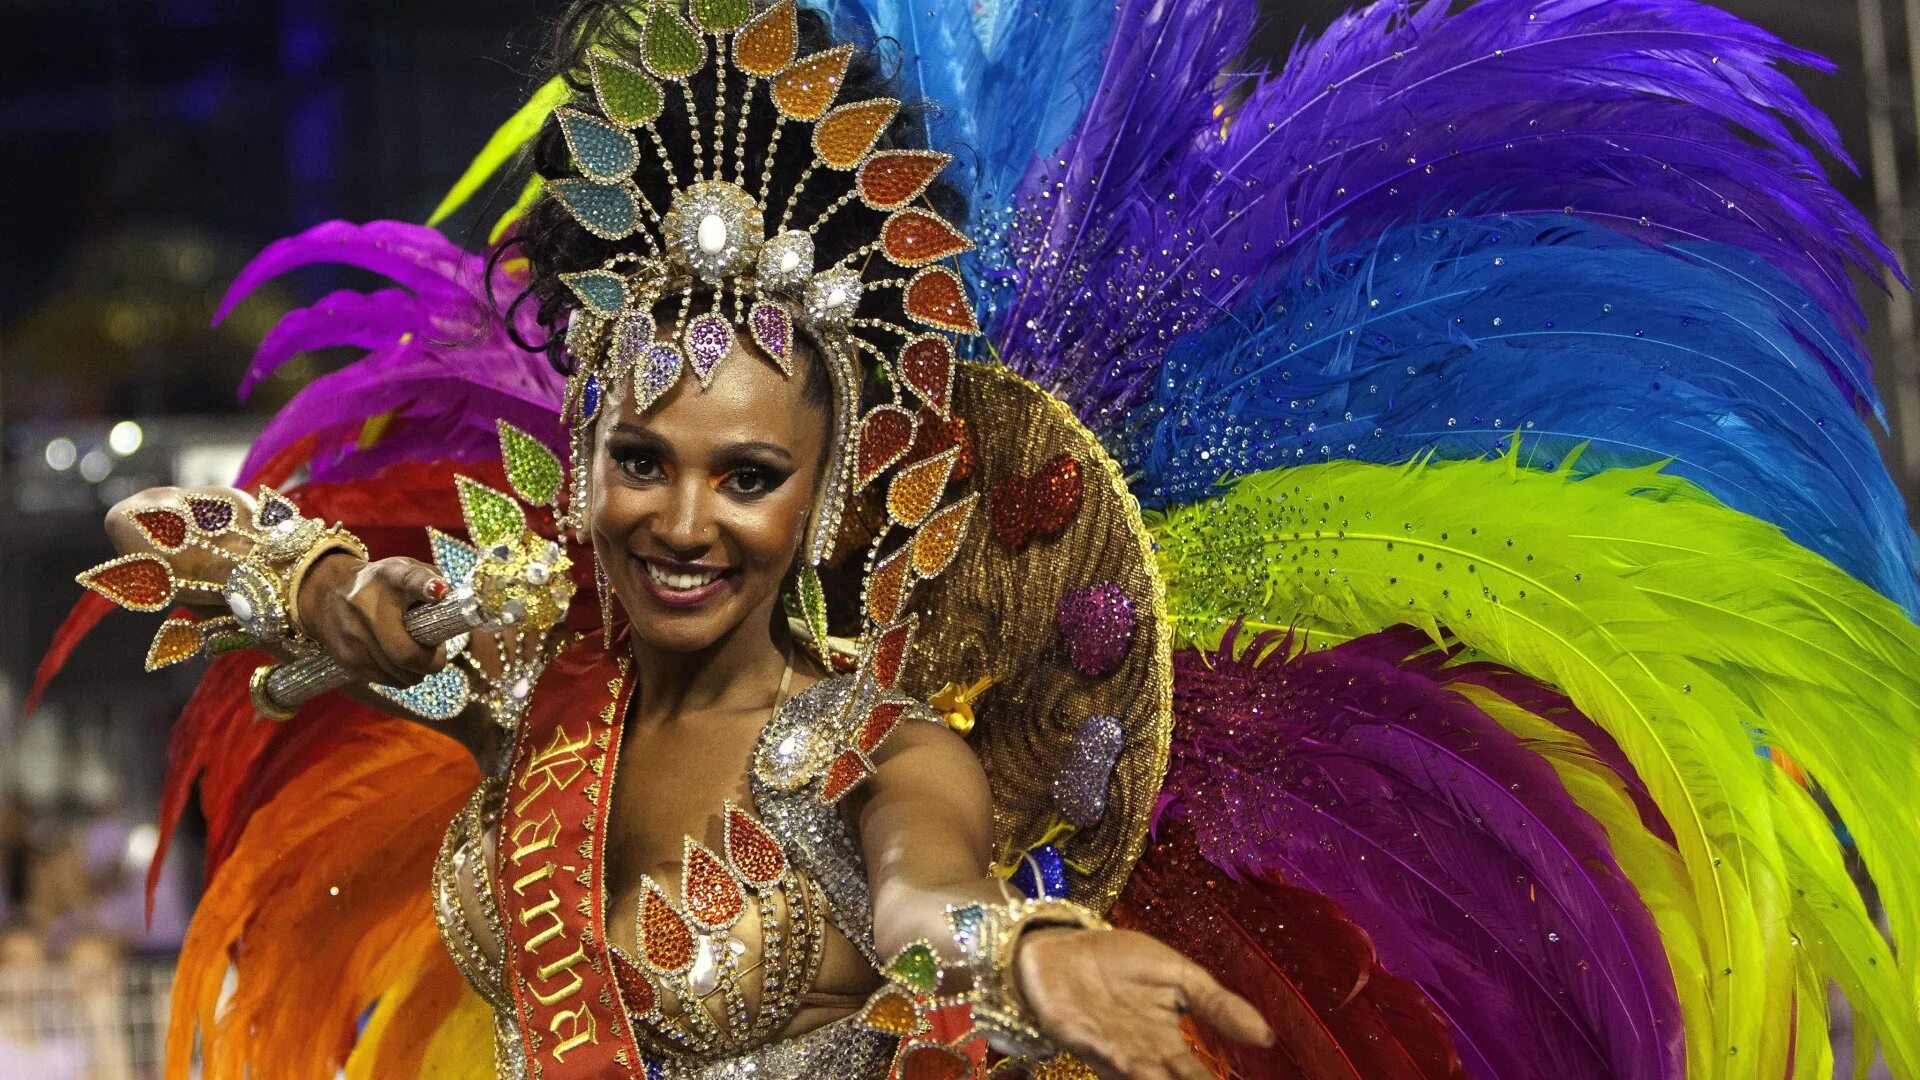 Карнавал в Рио-де-Жанейро. Карнавал в Рио-де-Жанейро 2022. Рио-де-Жанейро карнавал костюмы. Карнавал в Рио-де-Жанейро (бразильский карнавал).